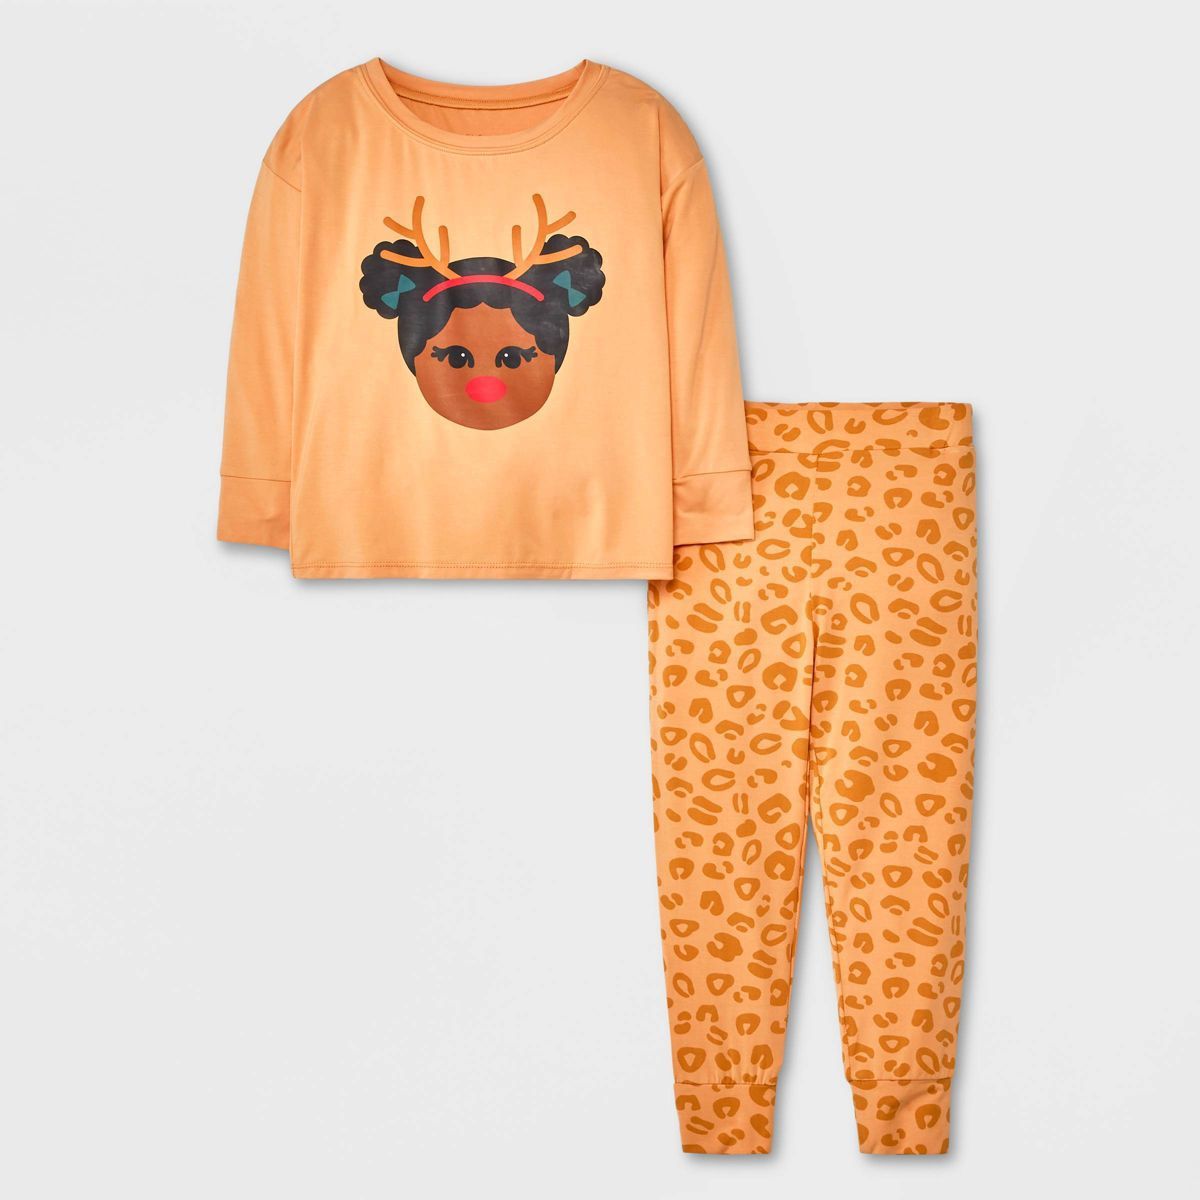 Elle Olivia Toddler Girls' 2pc Reindeer Pajama Set - Tan | Target